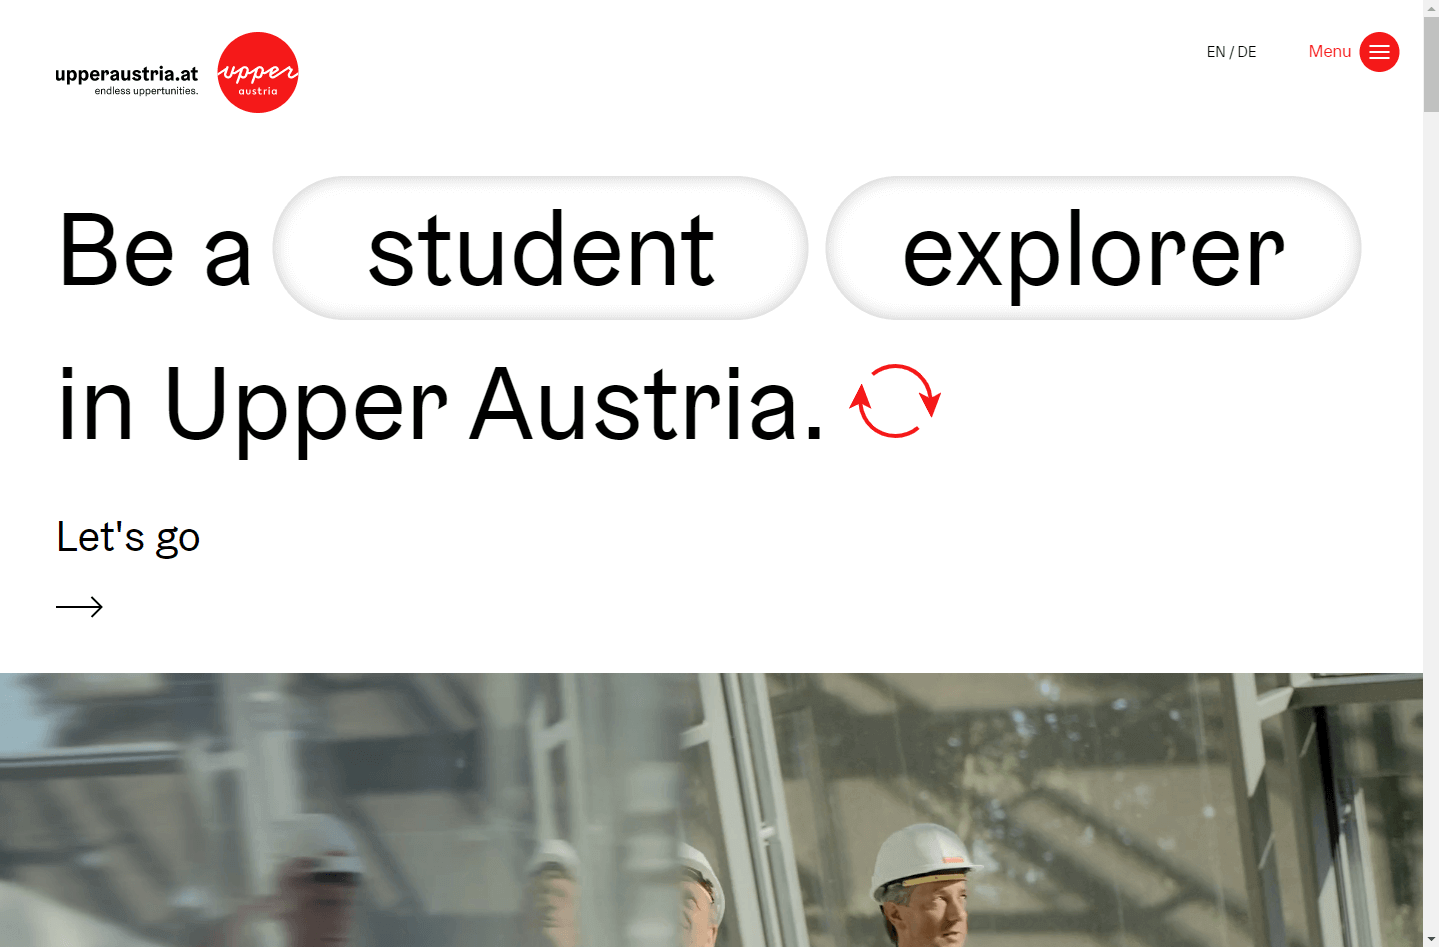 Business Upper Austria – OÖ Wirtschaftsagentur GmbH